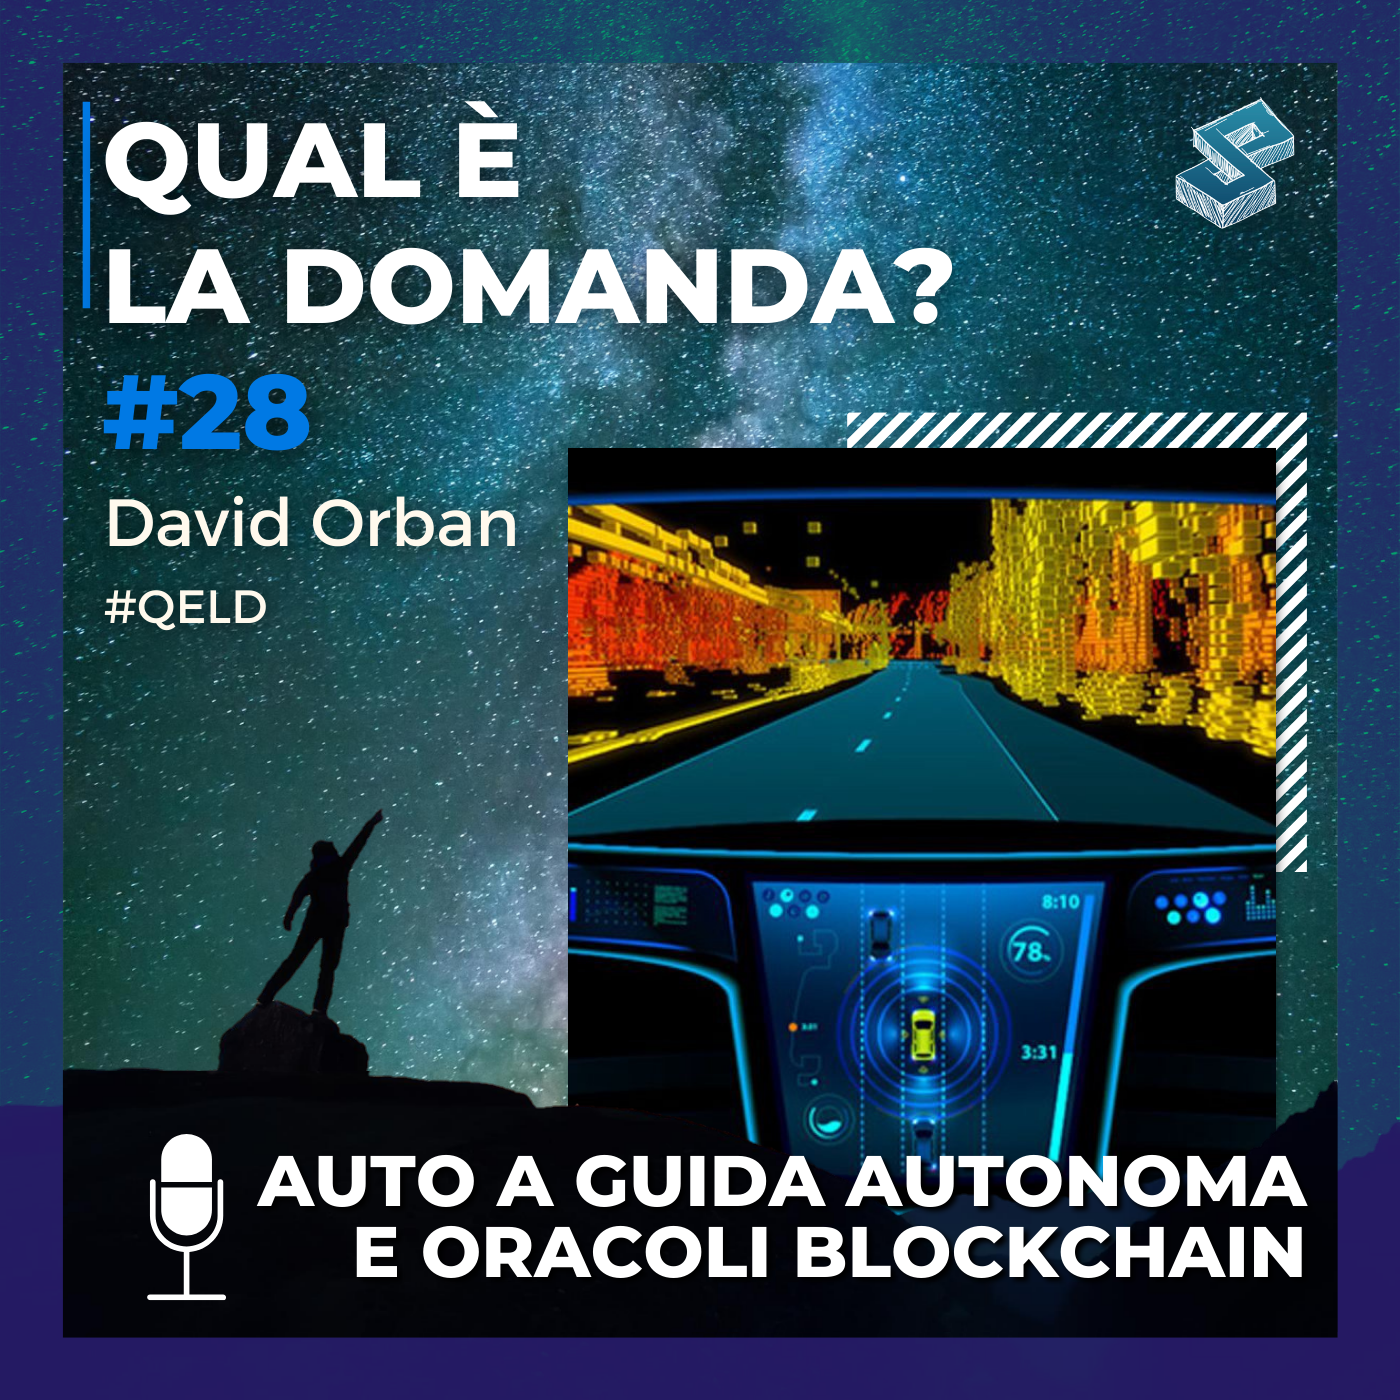 Auto a guida autonoma e oracoli blockchain - QELD #28